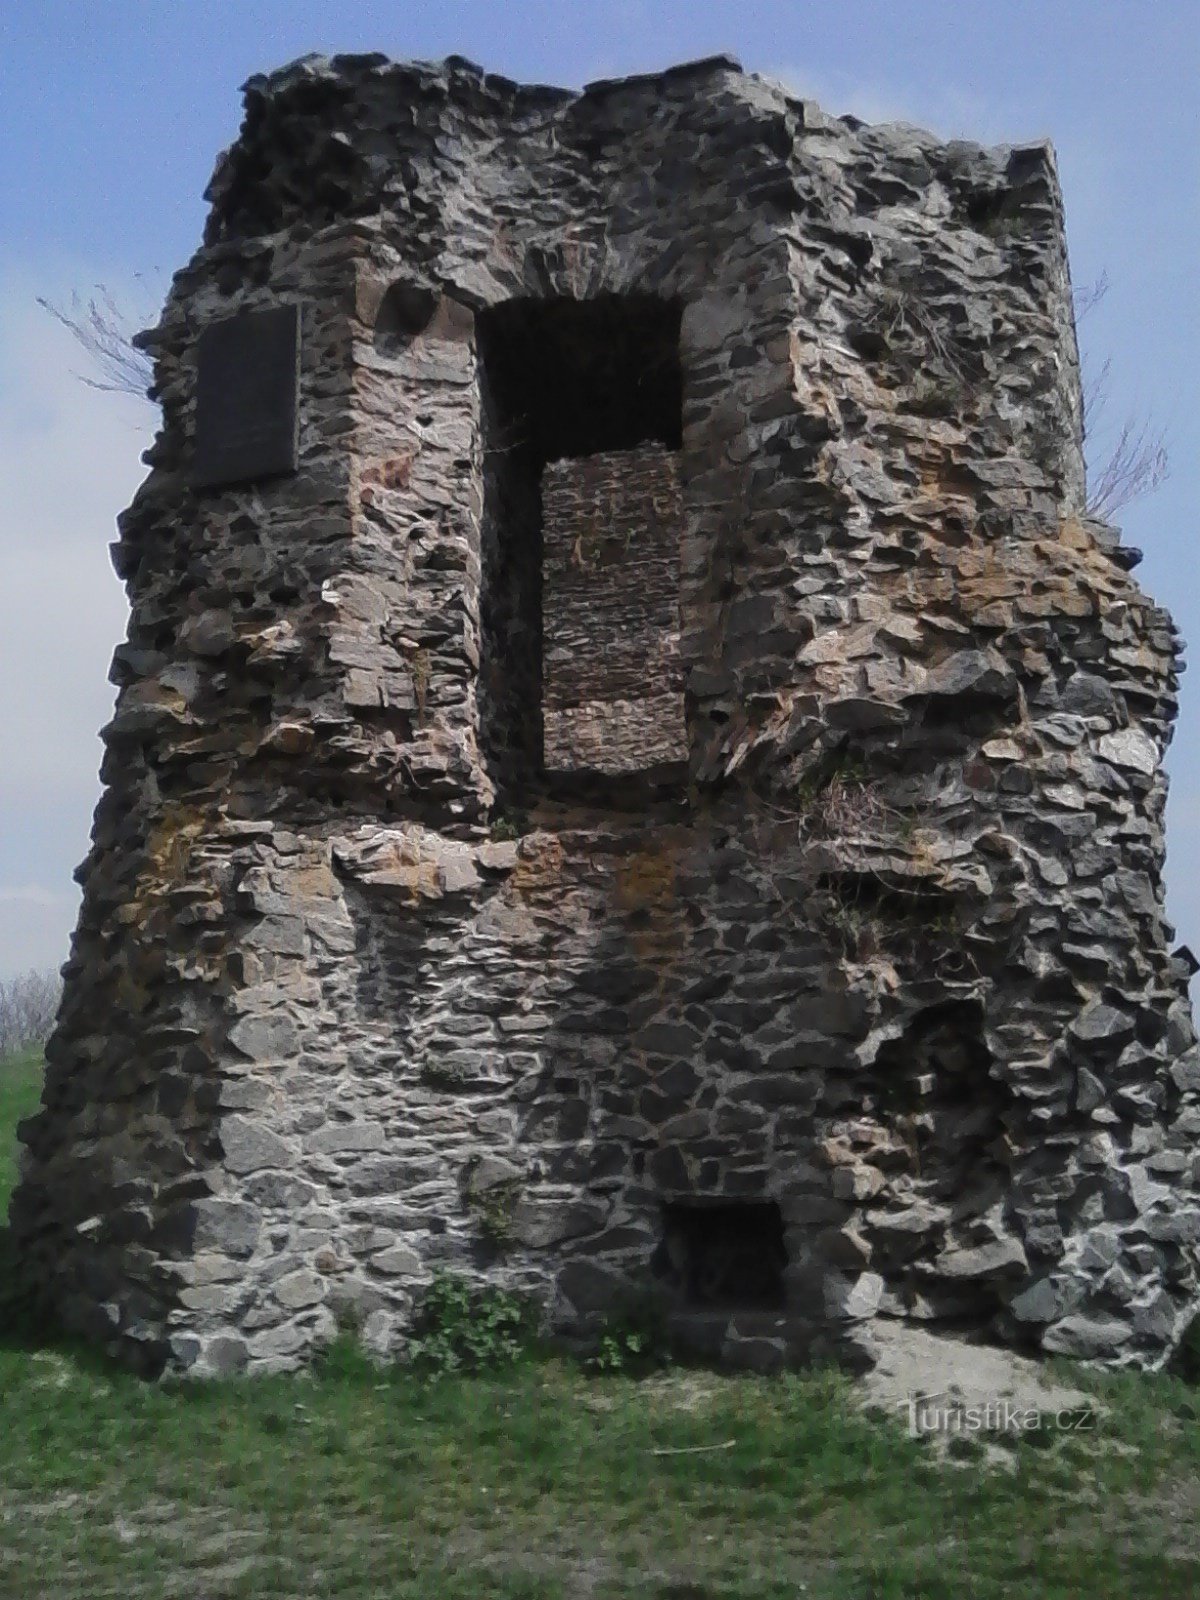 2. Een deel van de muren van het kasteel van Borotína, hierboven is een plaquette ter herdenking van het bezoek van KH Mácha.